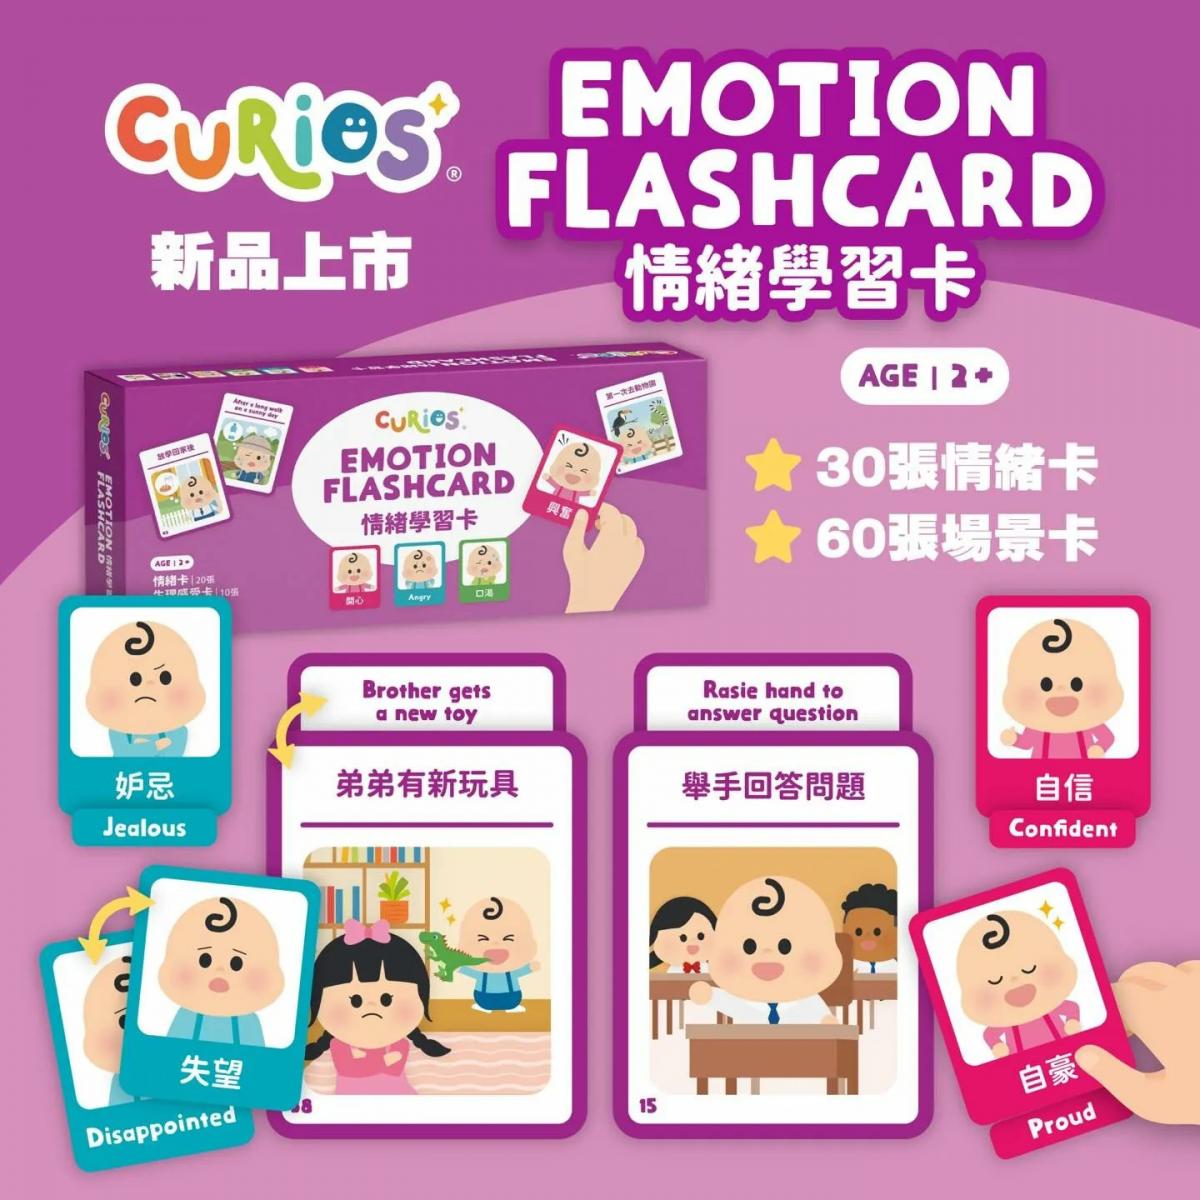 Curios 情緒學習卡Emotion Card